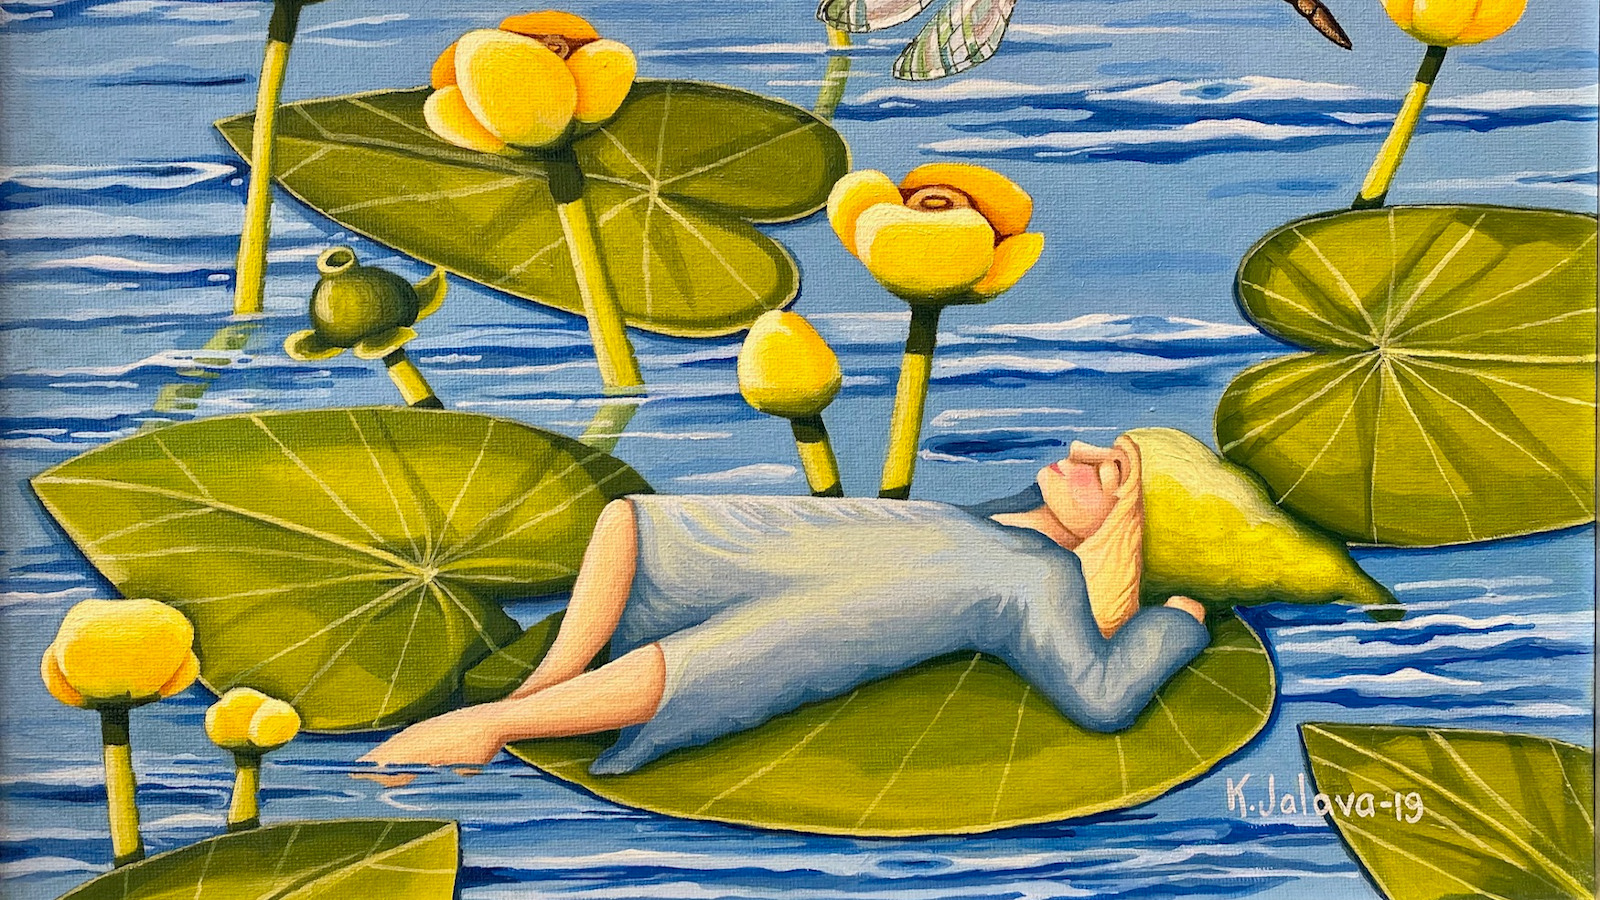 Kuvassa on ulpukanlehdellä makaava tyttötonttuhahmo.  Lehti kelluu sinisen veden päällä ja ympärillä on ulpukanlehtiä ja kukkia.